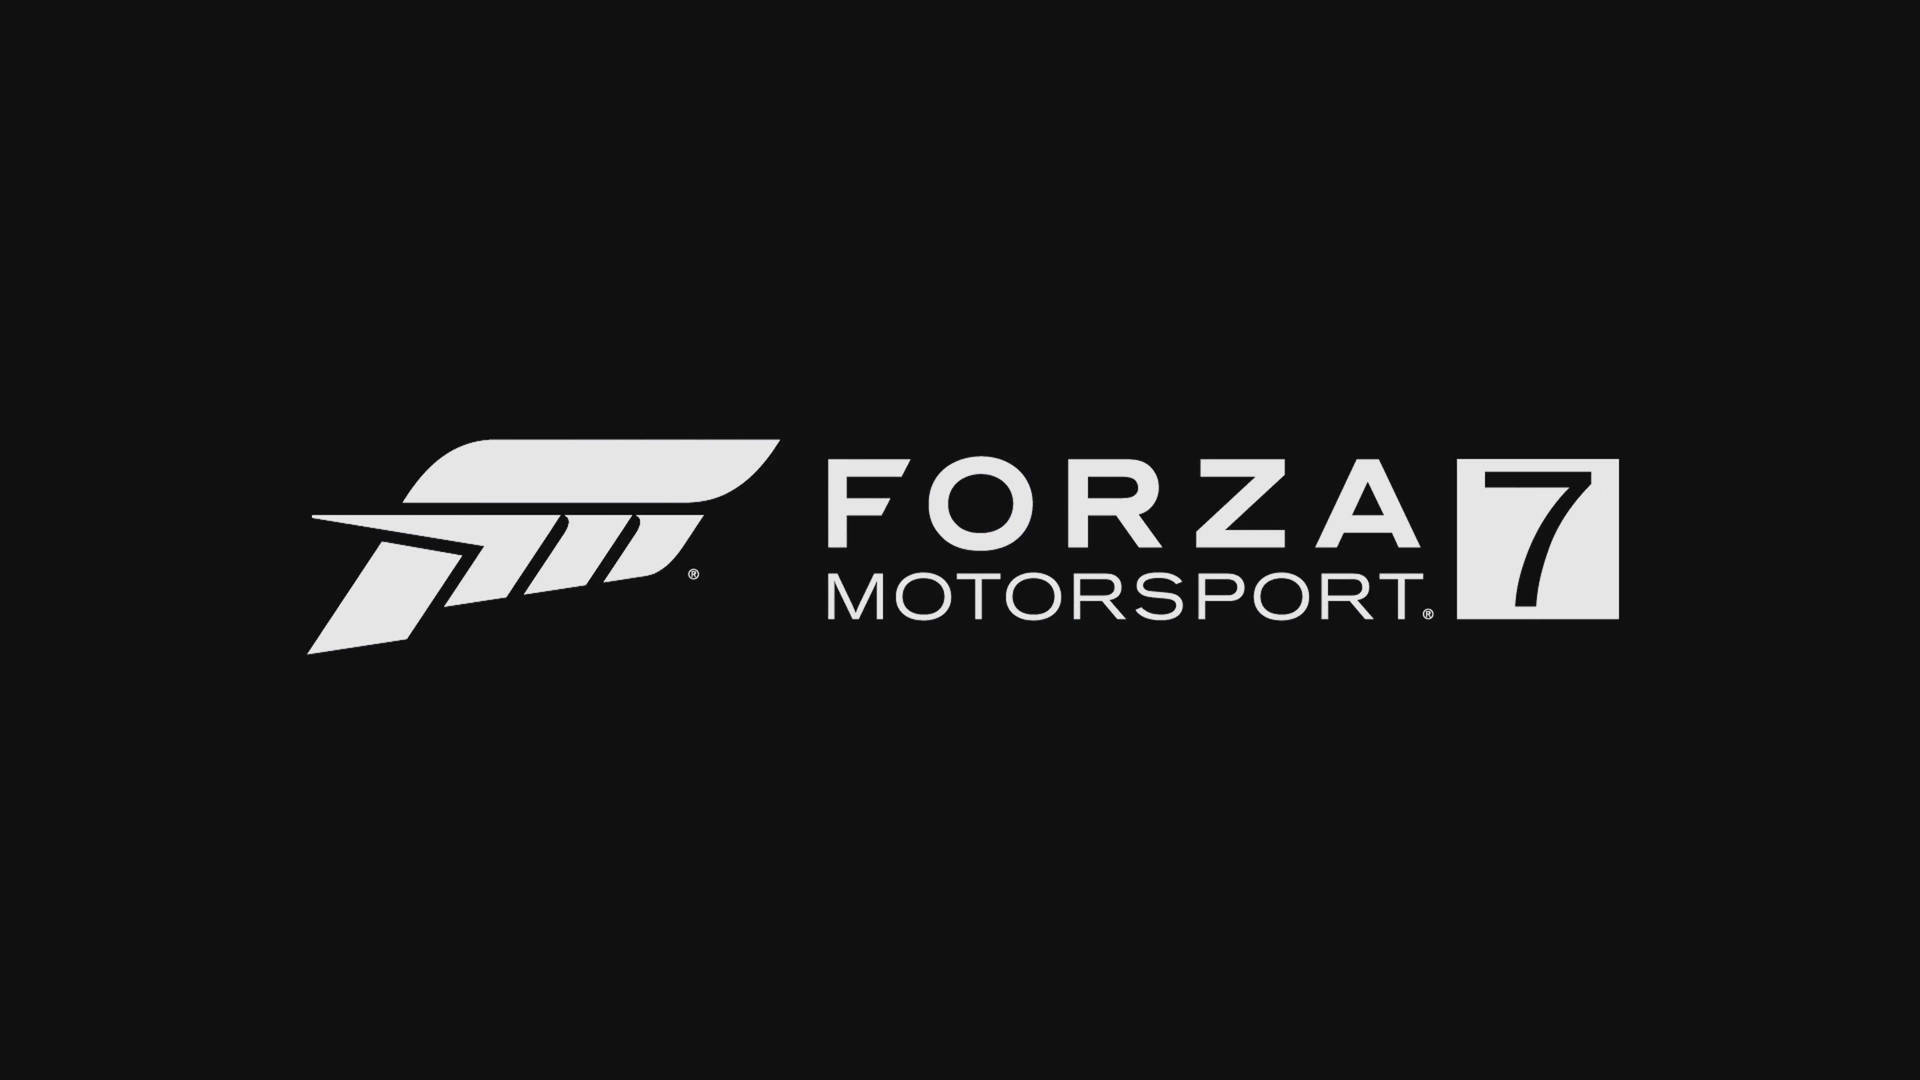 Tapet med Forza 7 Motorsport-logo Wallpaper